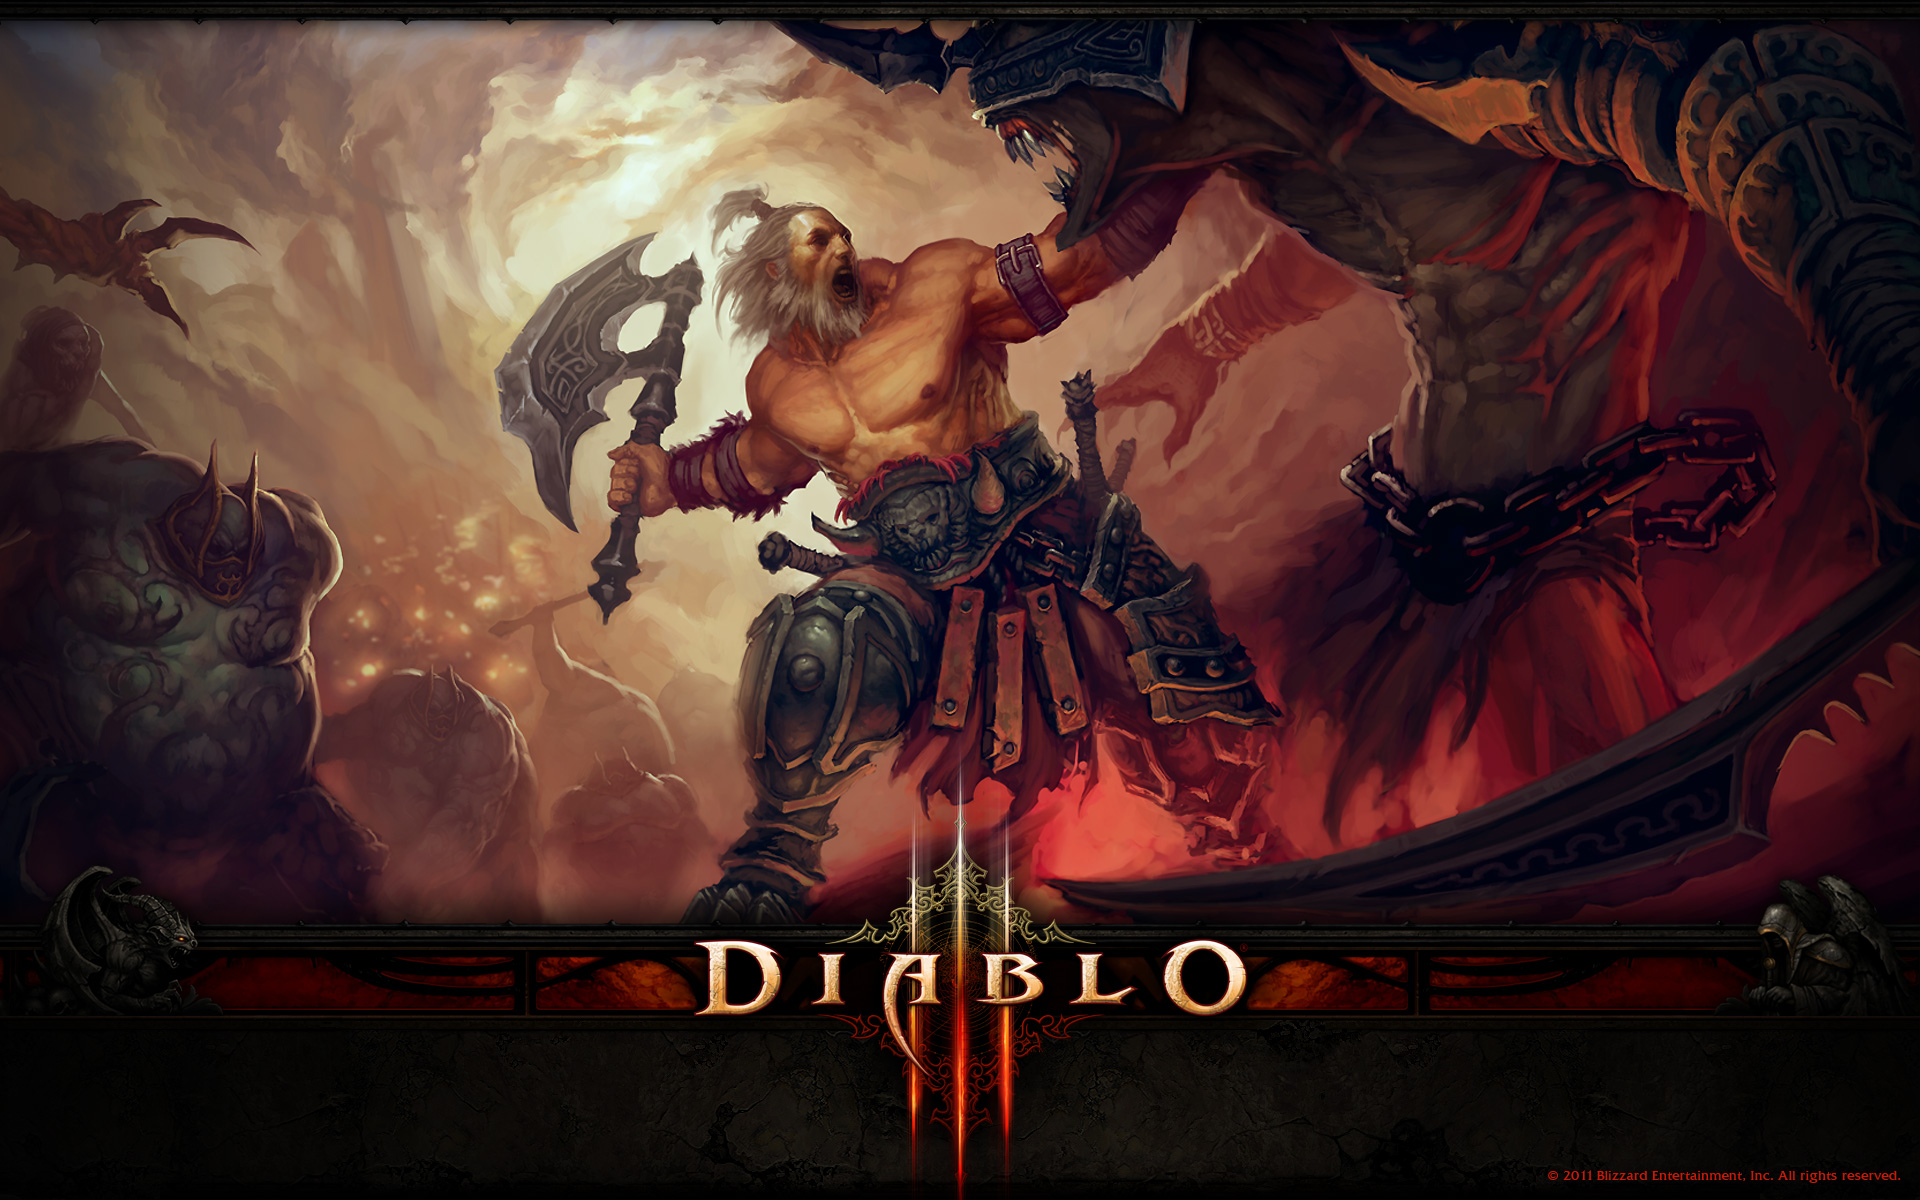 Descarga gratuita de fondo de pantalla para móvil de Bárbaro (Diablo Iii), Diablo Iii, Diablo, Videojuego.